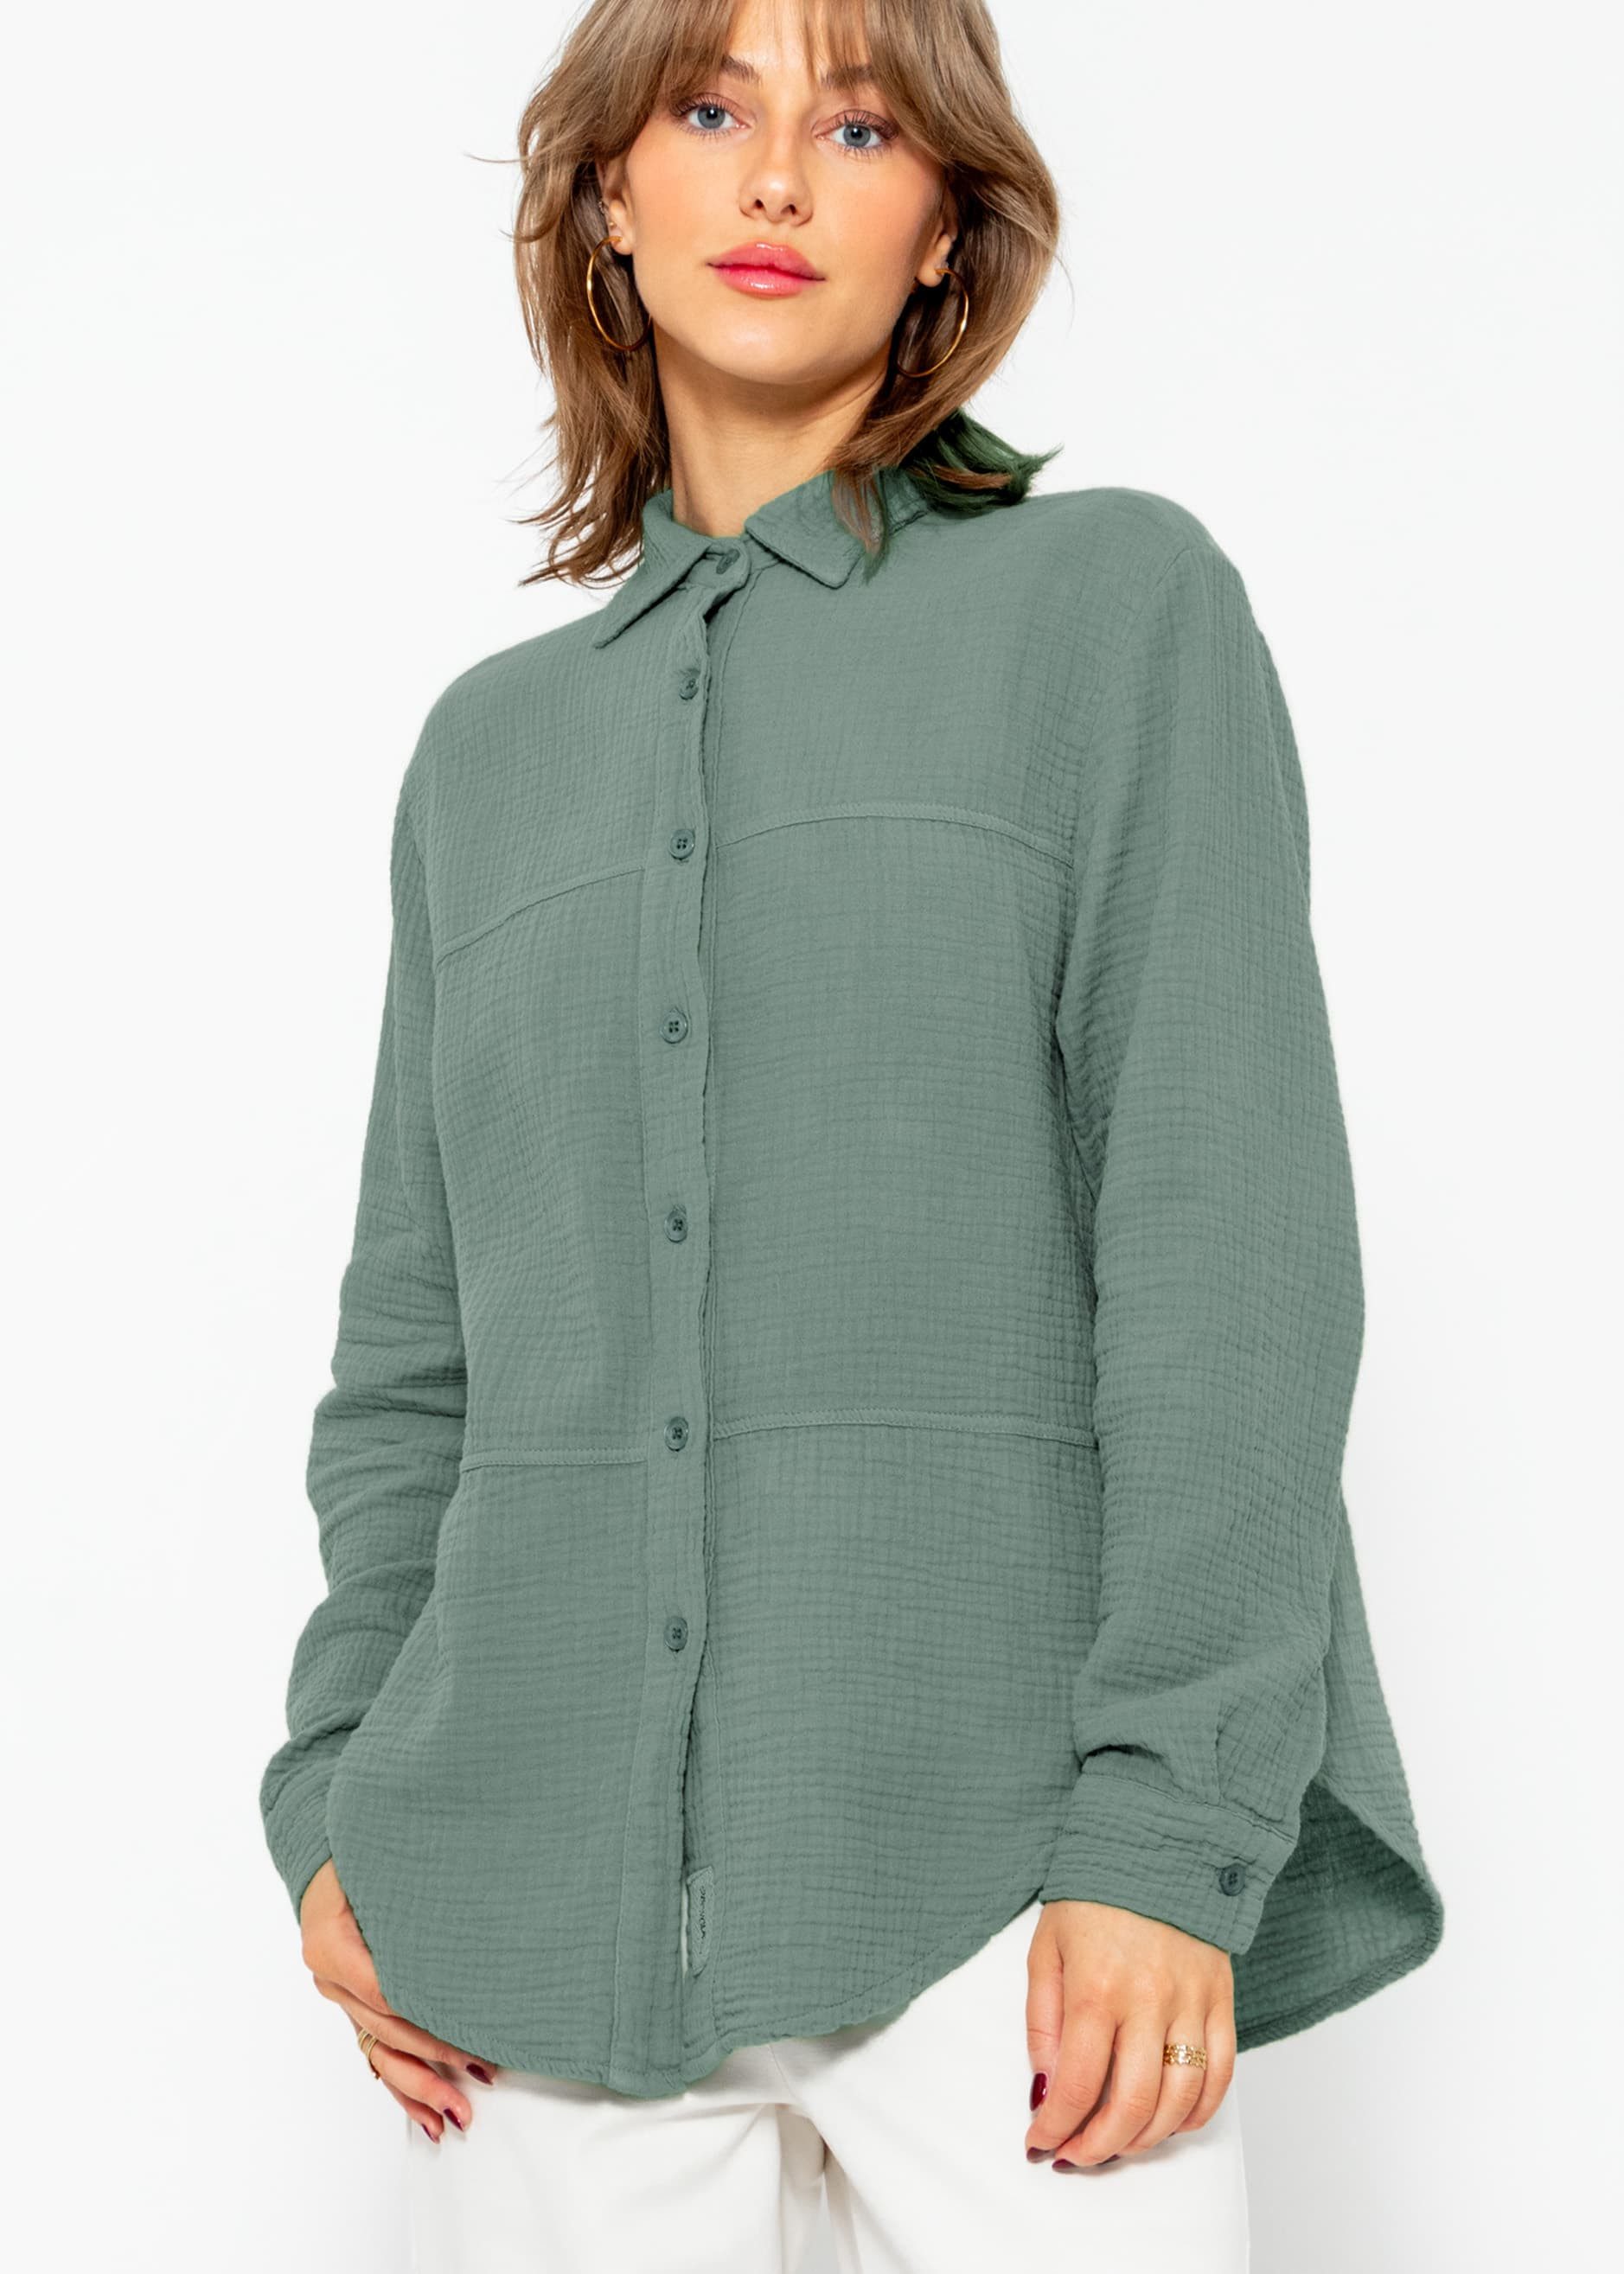 SASSYCLASSY Hemdbluse Musselin Bluse mit Ziernähten Baumwoll Bluse mit Patch, Kragen, Manschette und Knopfleiste